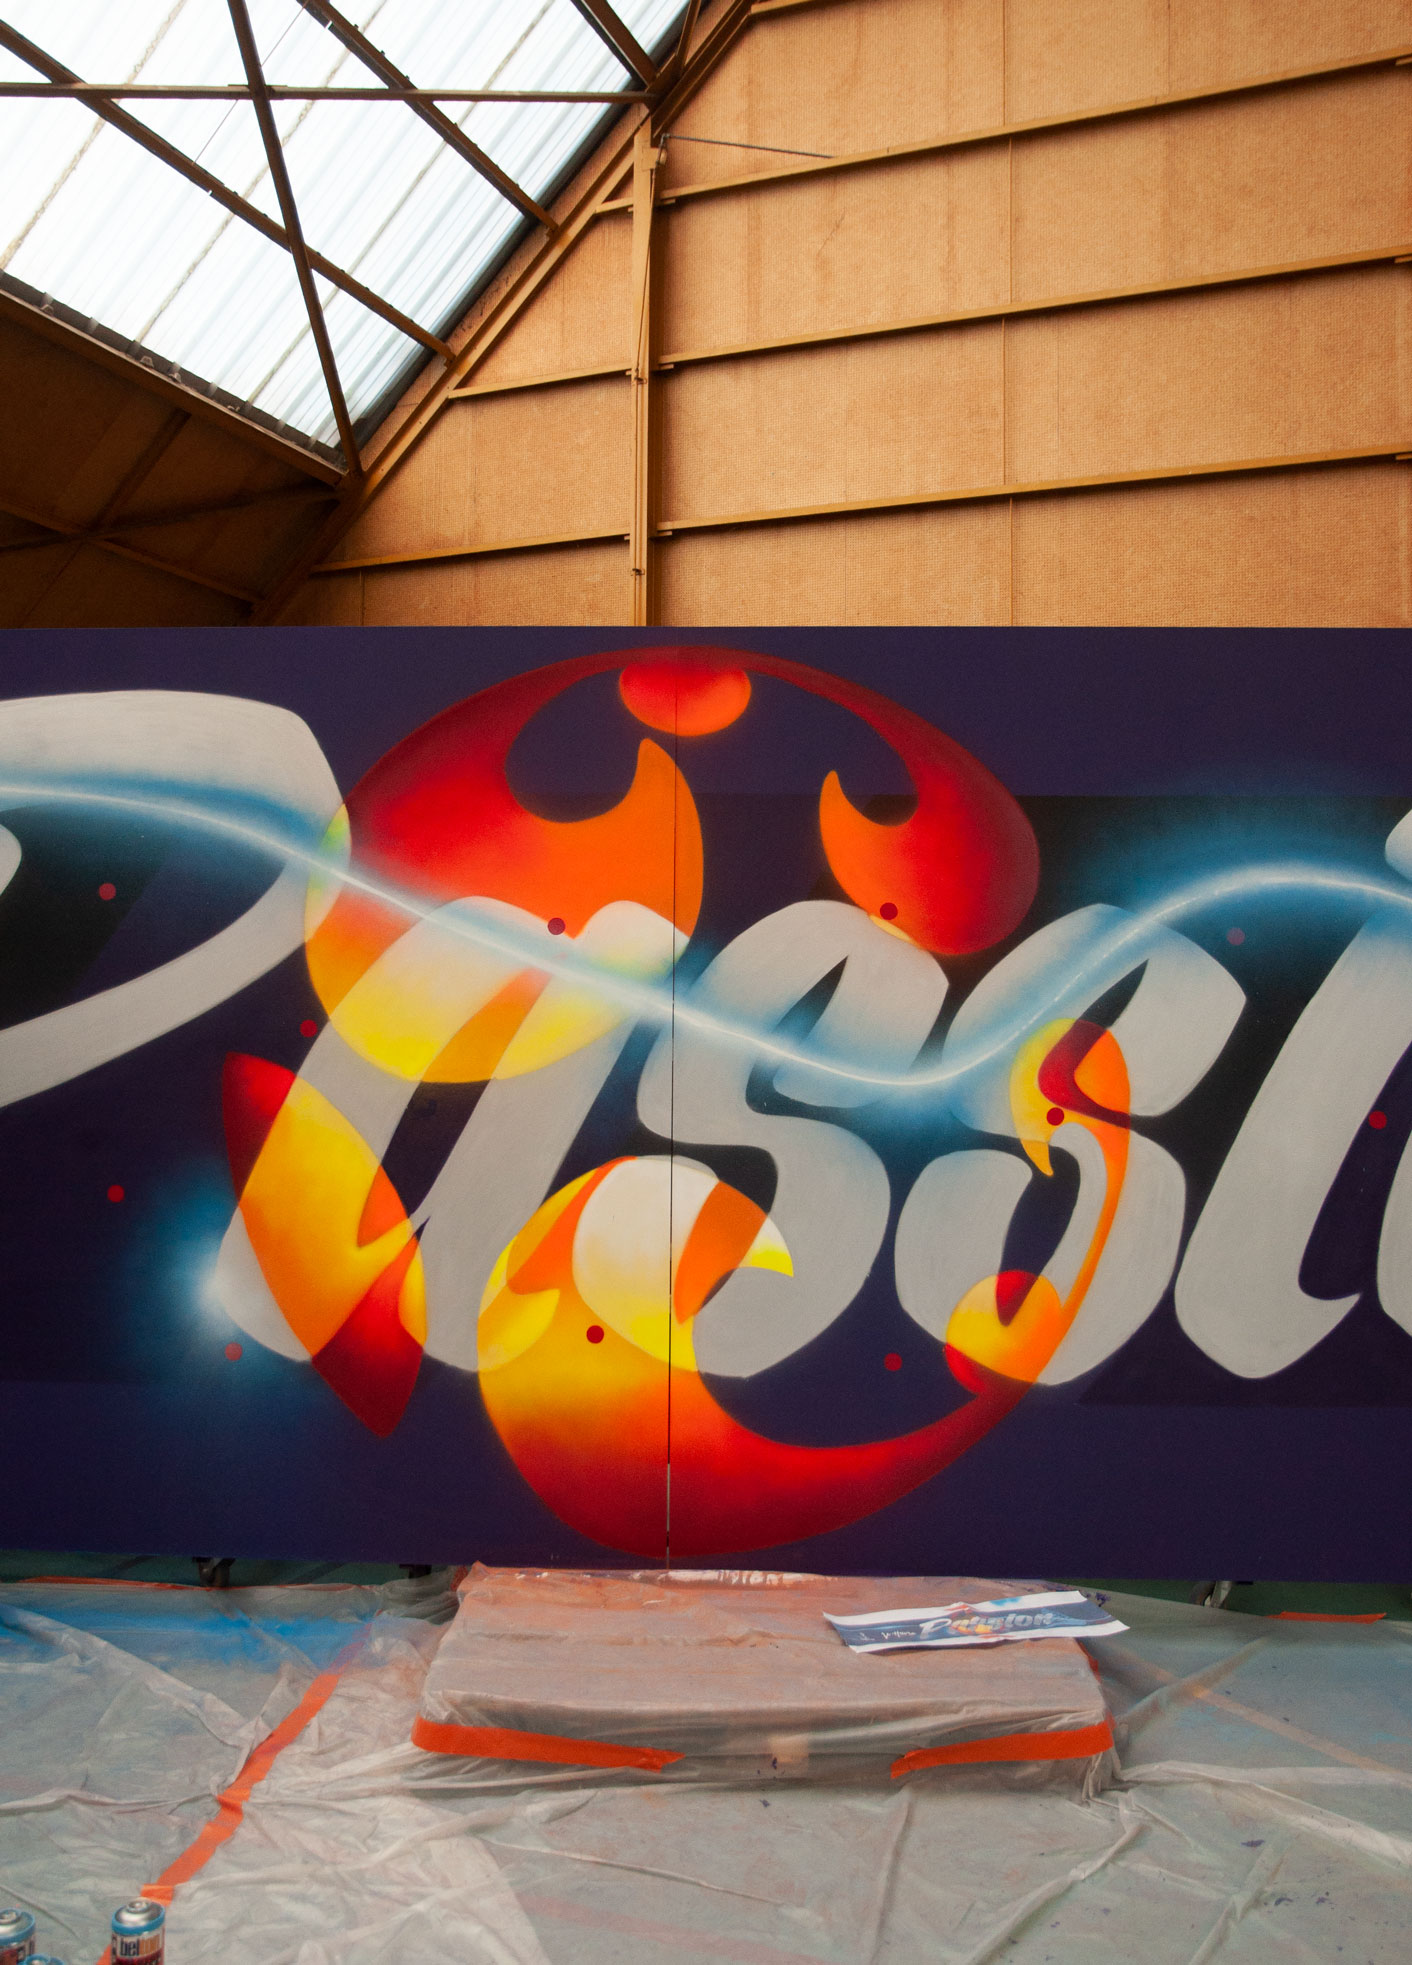 événementiel peinture pour la fifa coupe du monde feminine 2019 france graffiti art fresque reveal villes hotes 2018